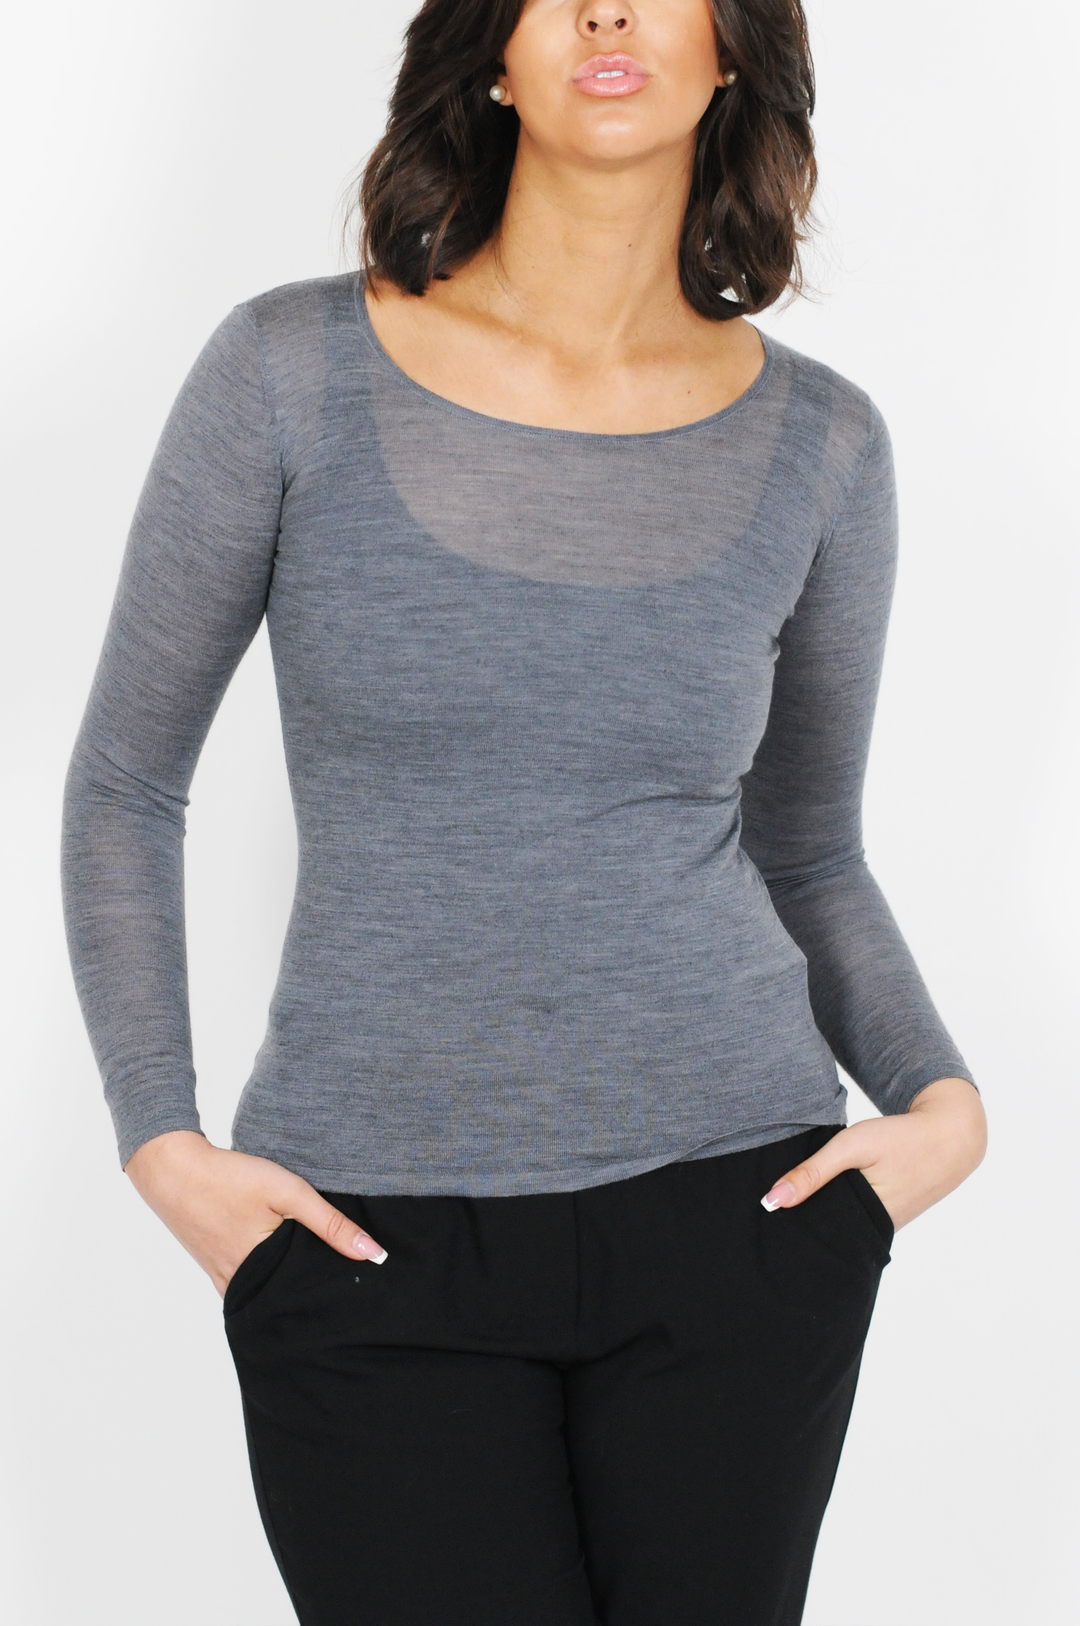 SY-23007 Shirt - 100% Wool - Women - Dark Grey